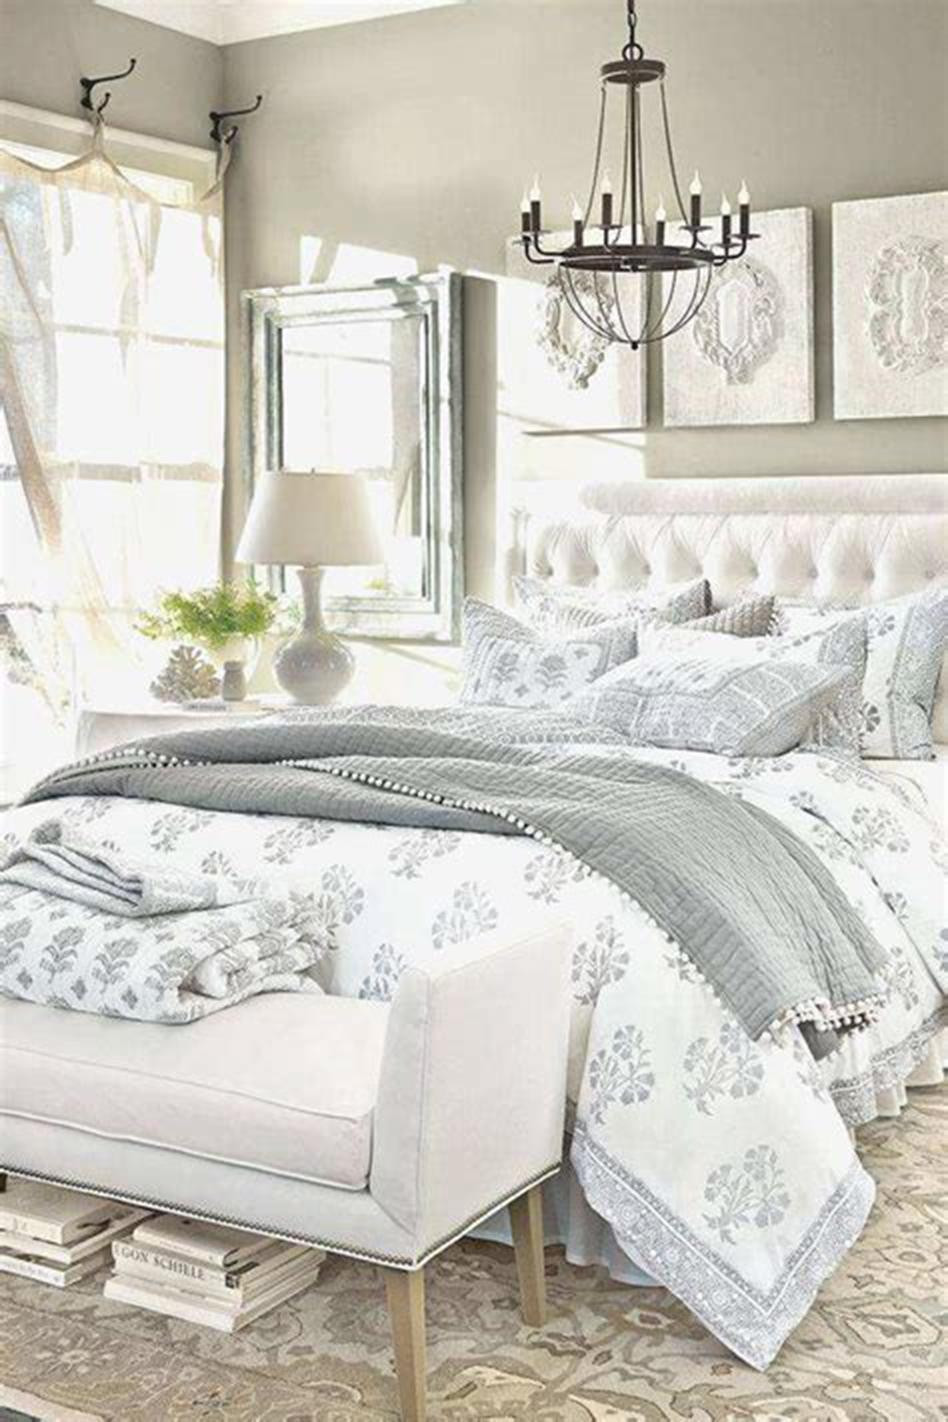 Master Bedroom Comforters
 45 Beautiful Master Bedroom Bedding Ideas 2019 32